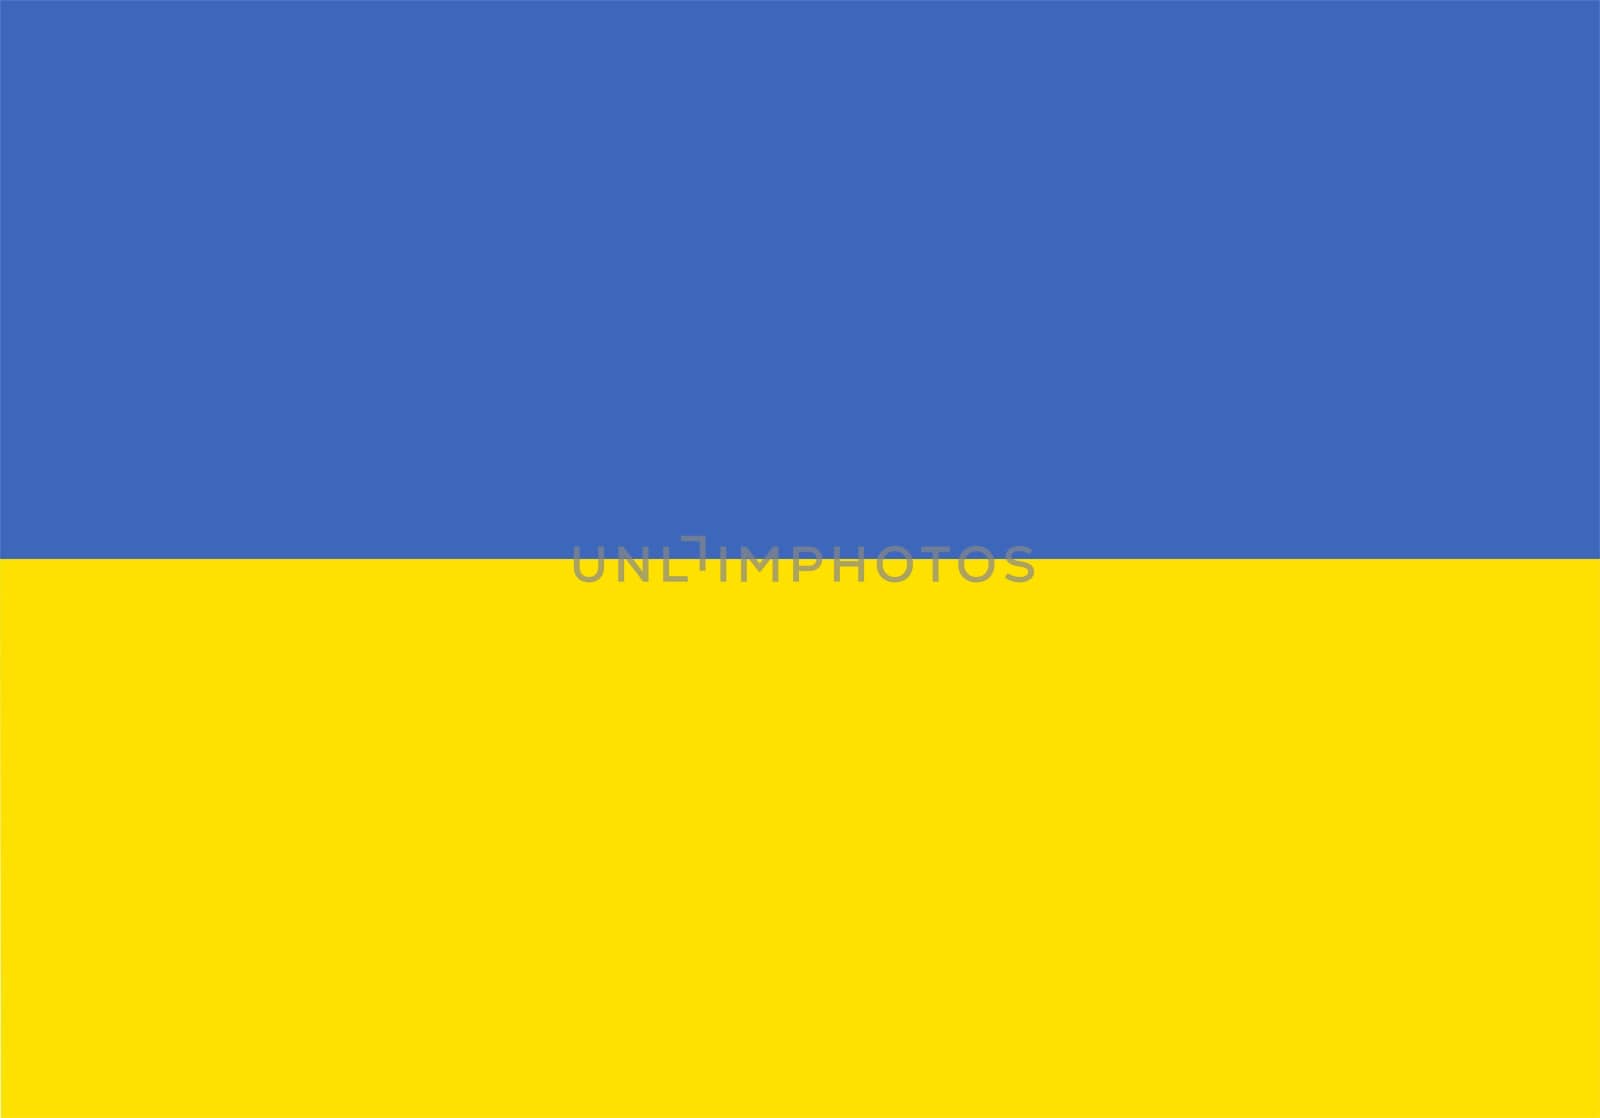 2D illustration of the flag of ukraine